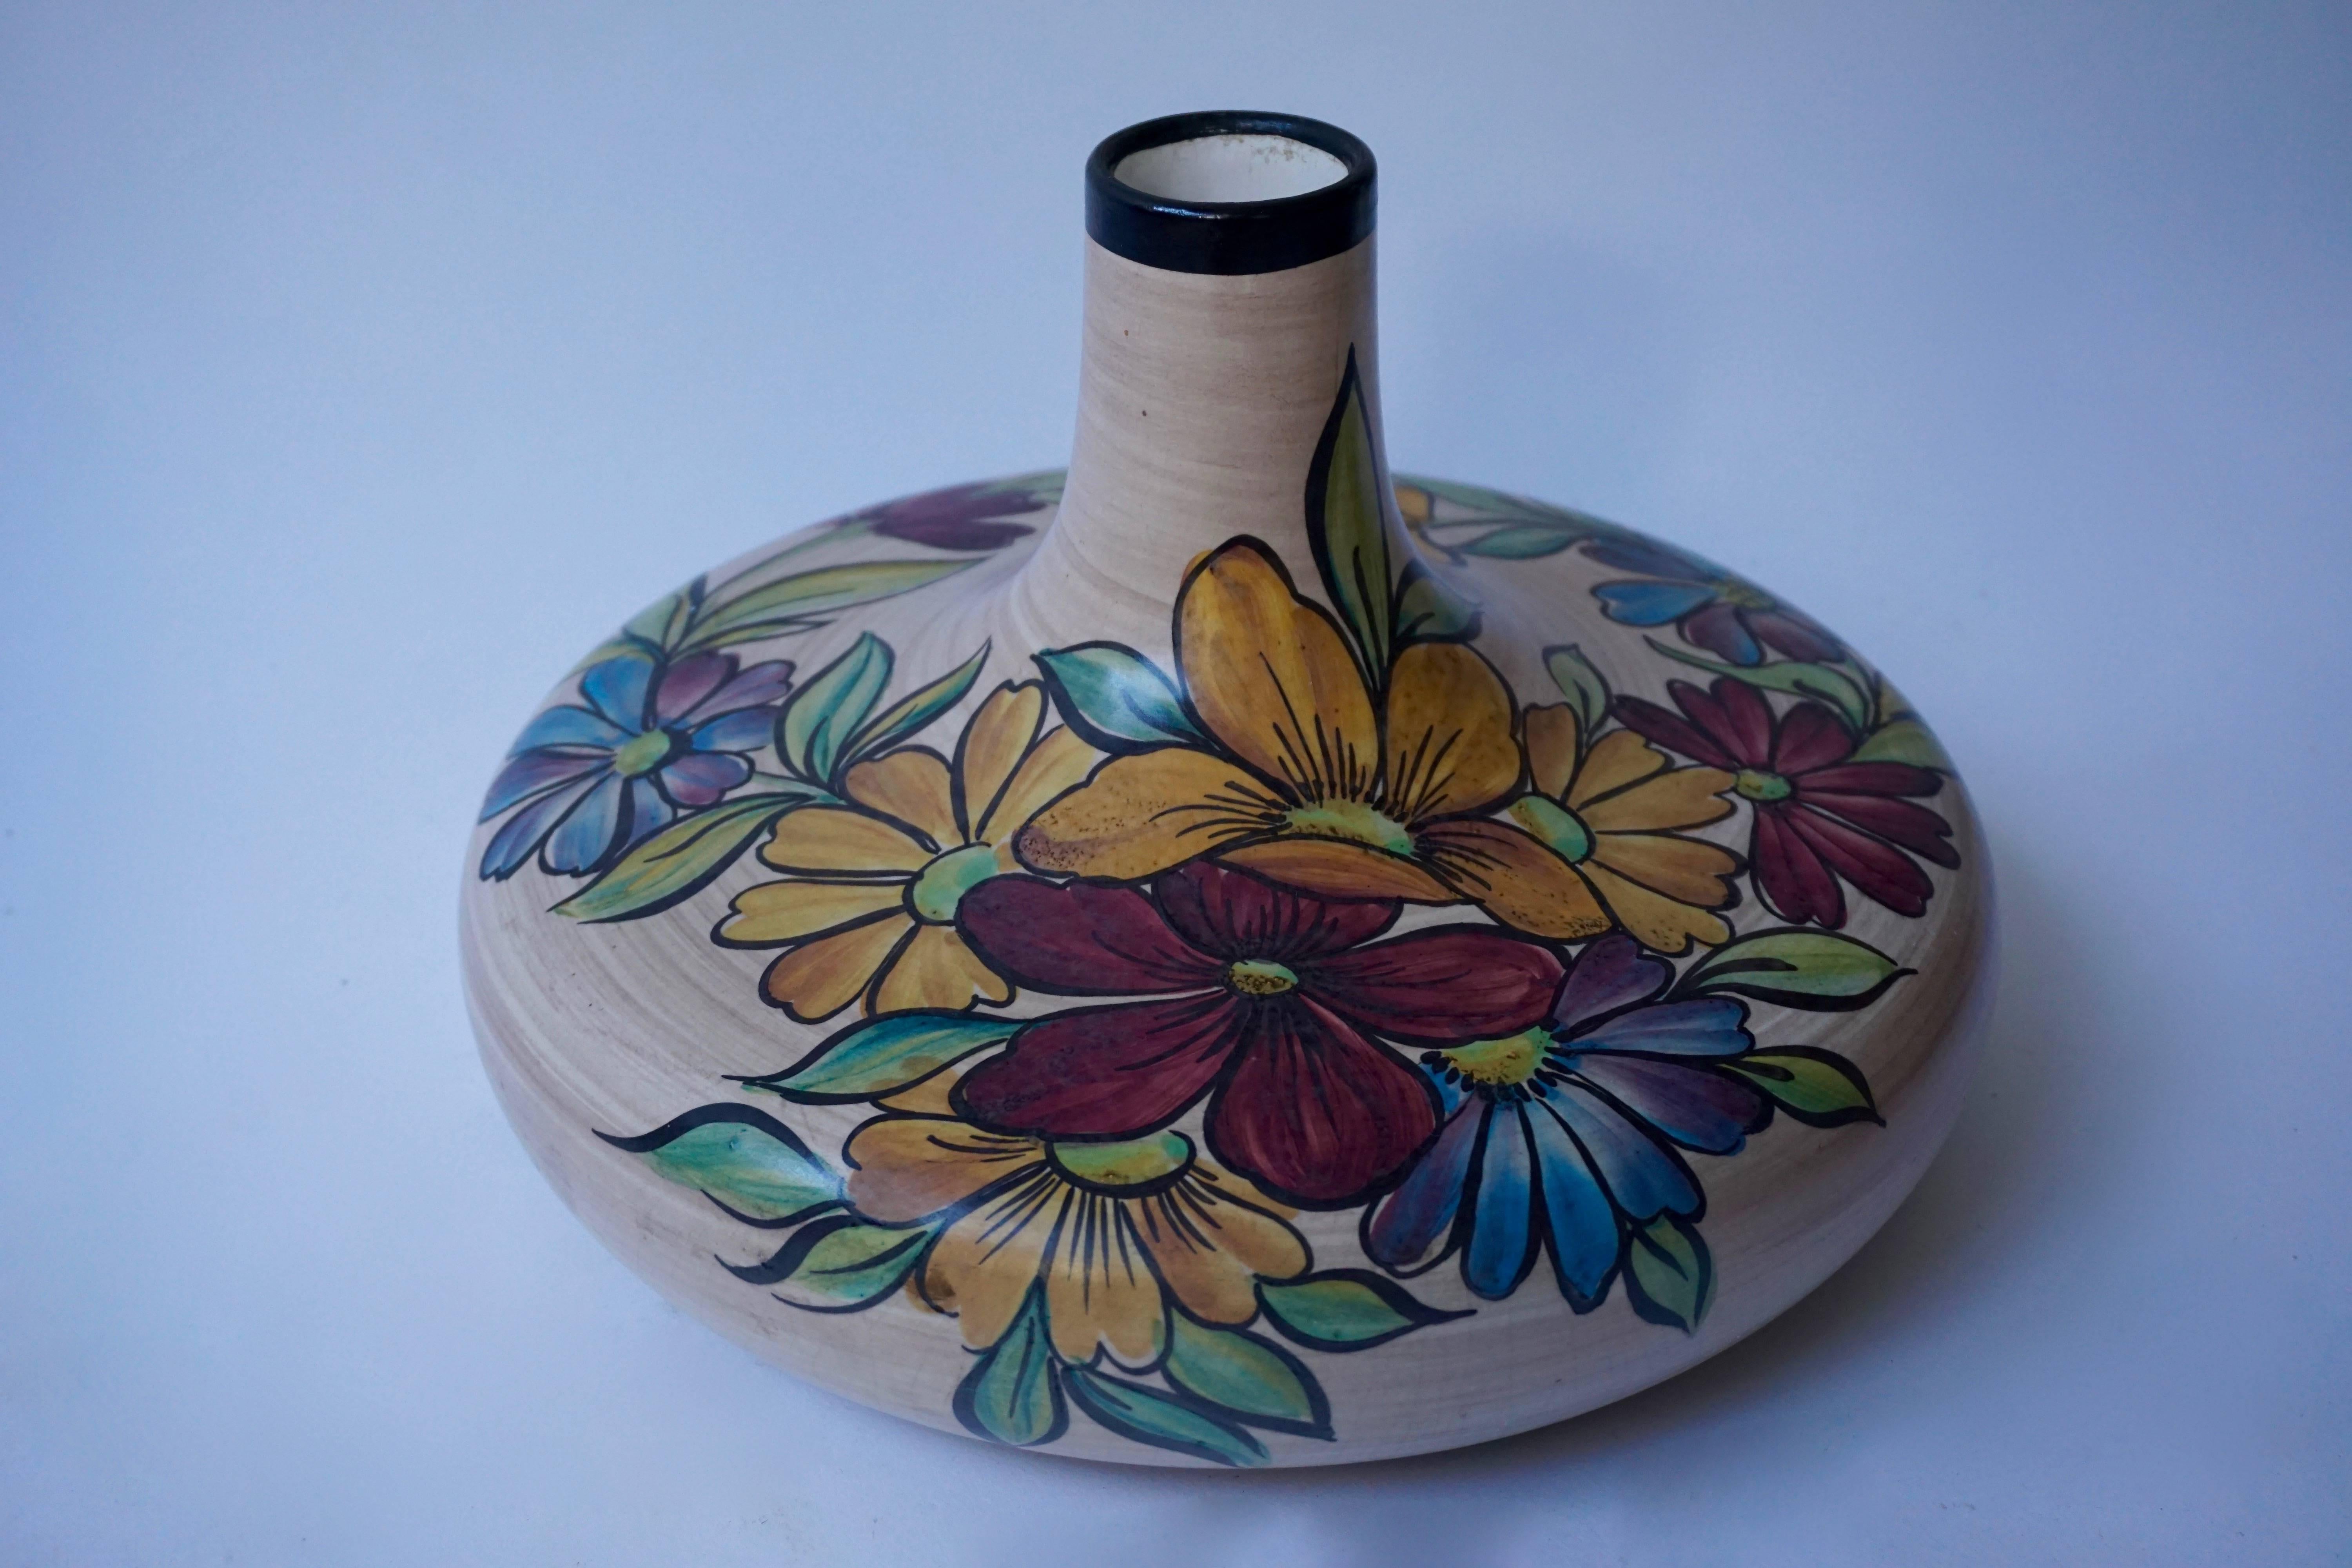 Ceramic vase with flowers.
Measures: Diameter 30 cm,
height 19 cm.